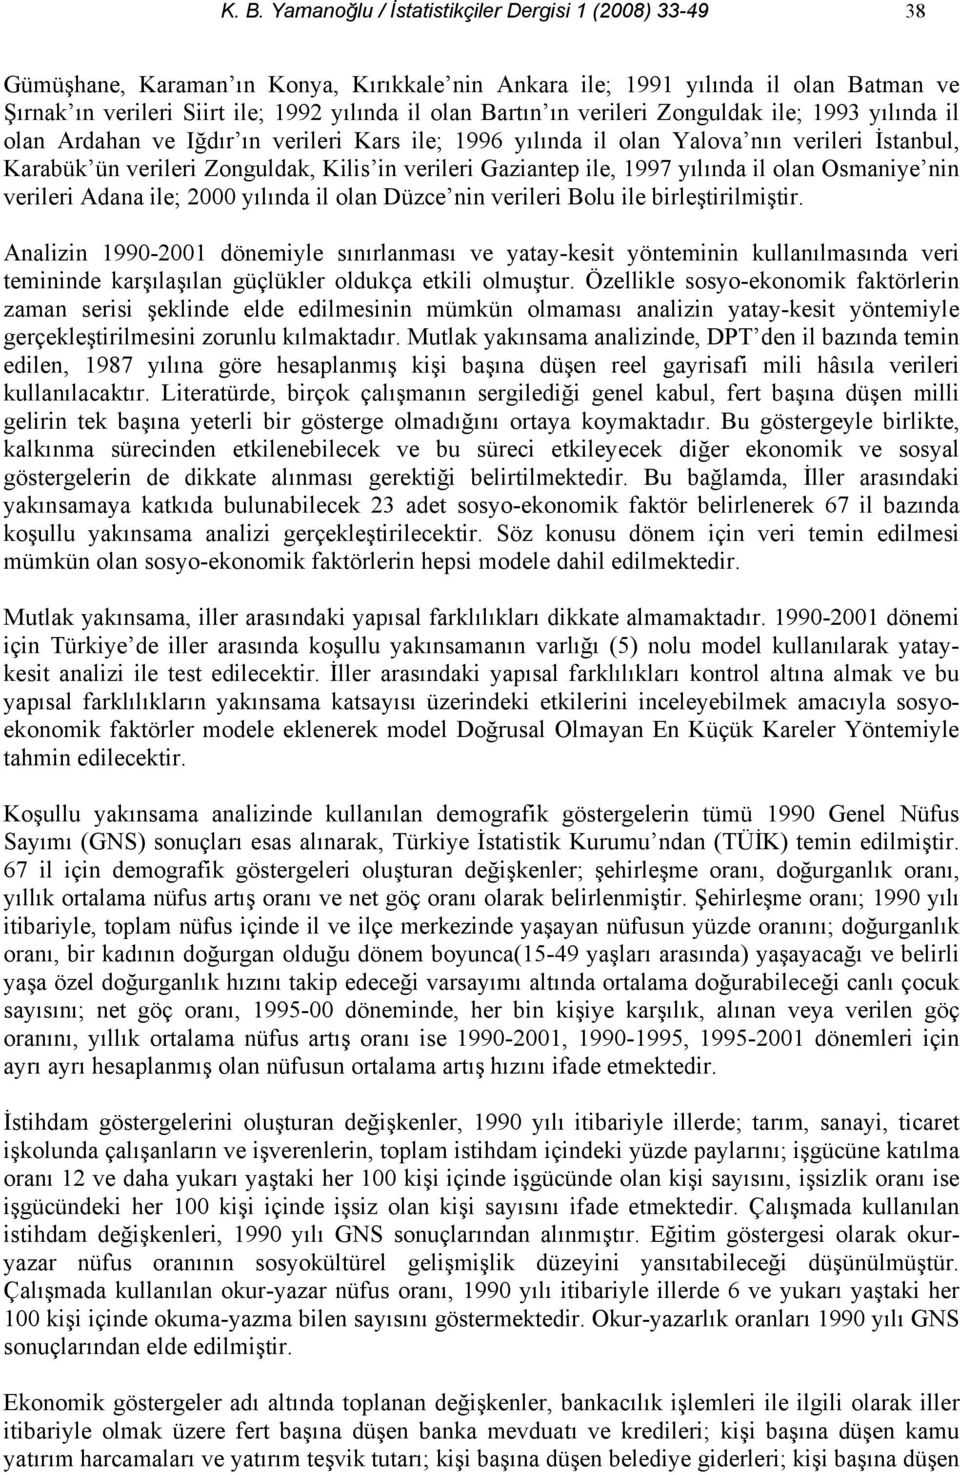 Gaziantep ile, 1997 yılında il olan Osmaniye nin verileri Adana ile; 2000 yılında il olan Düzce nin verileri Bolu ile birleştirilmiştir.